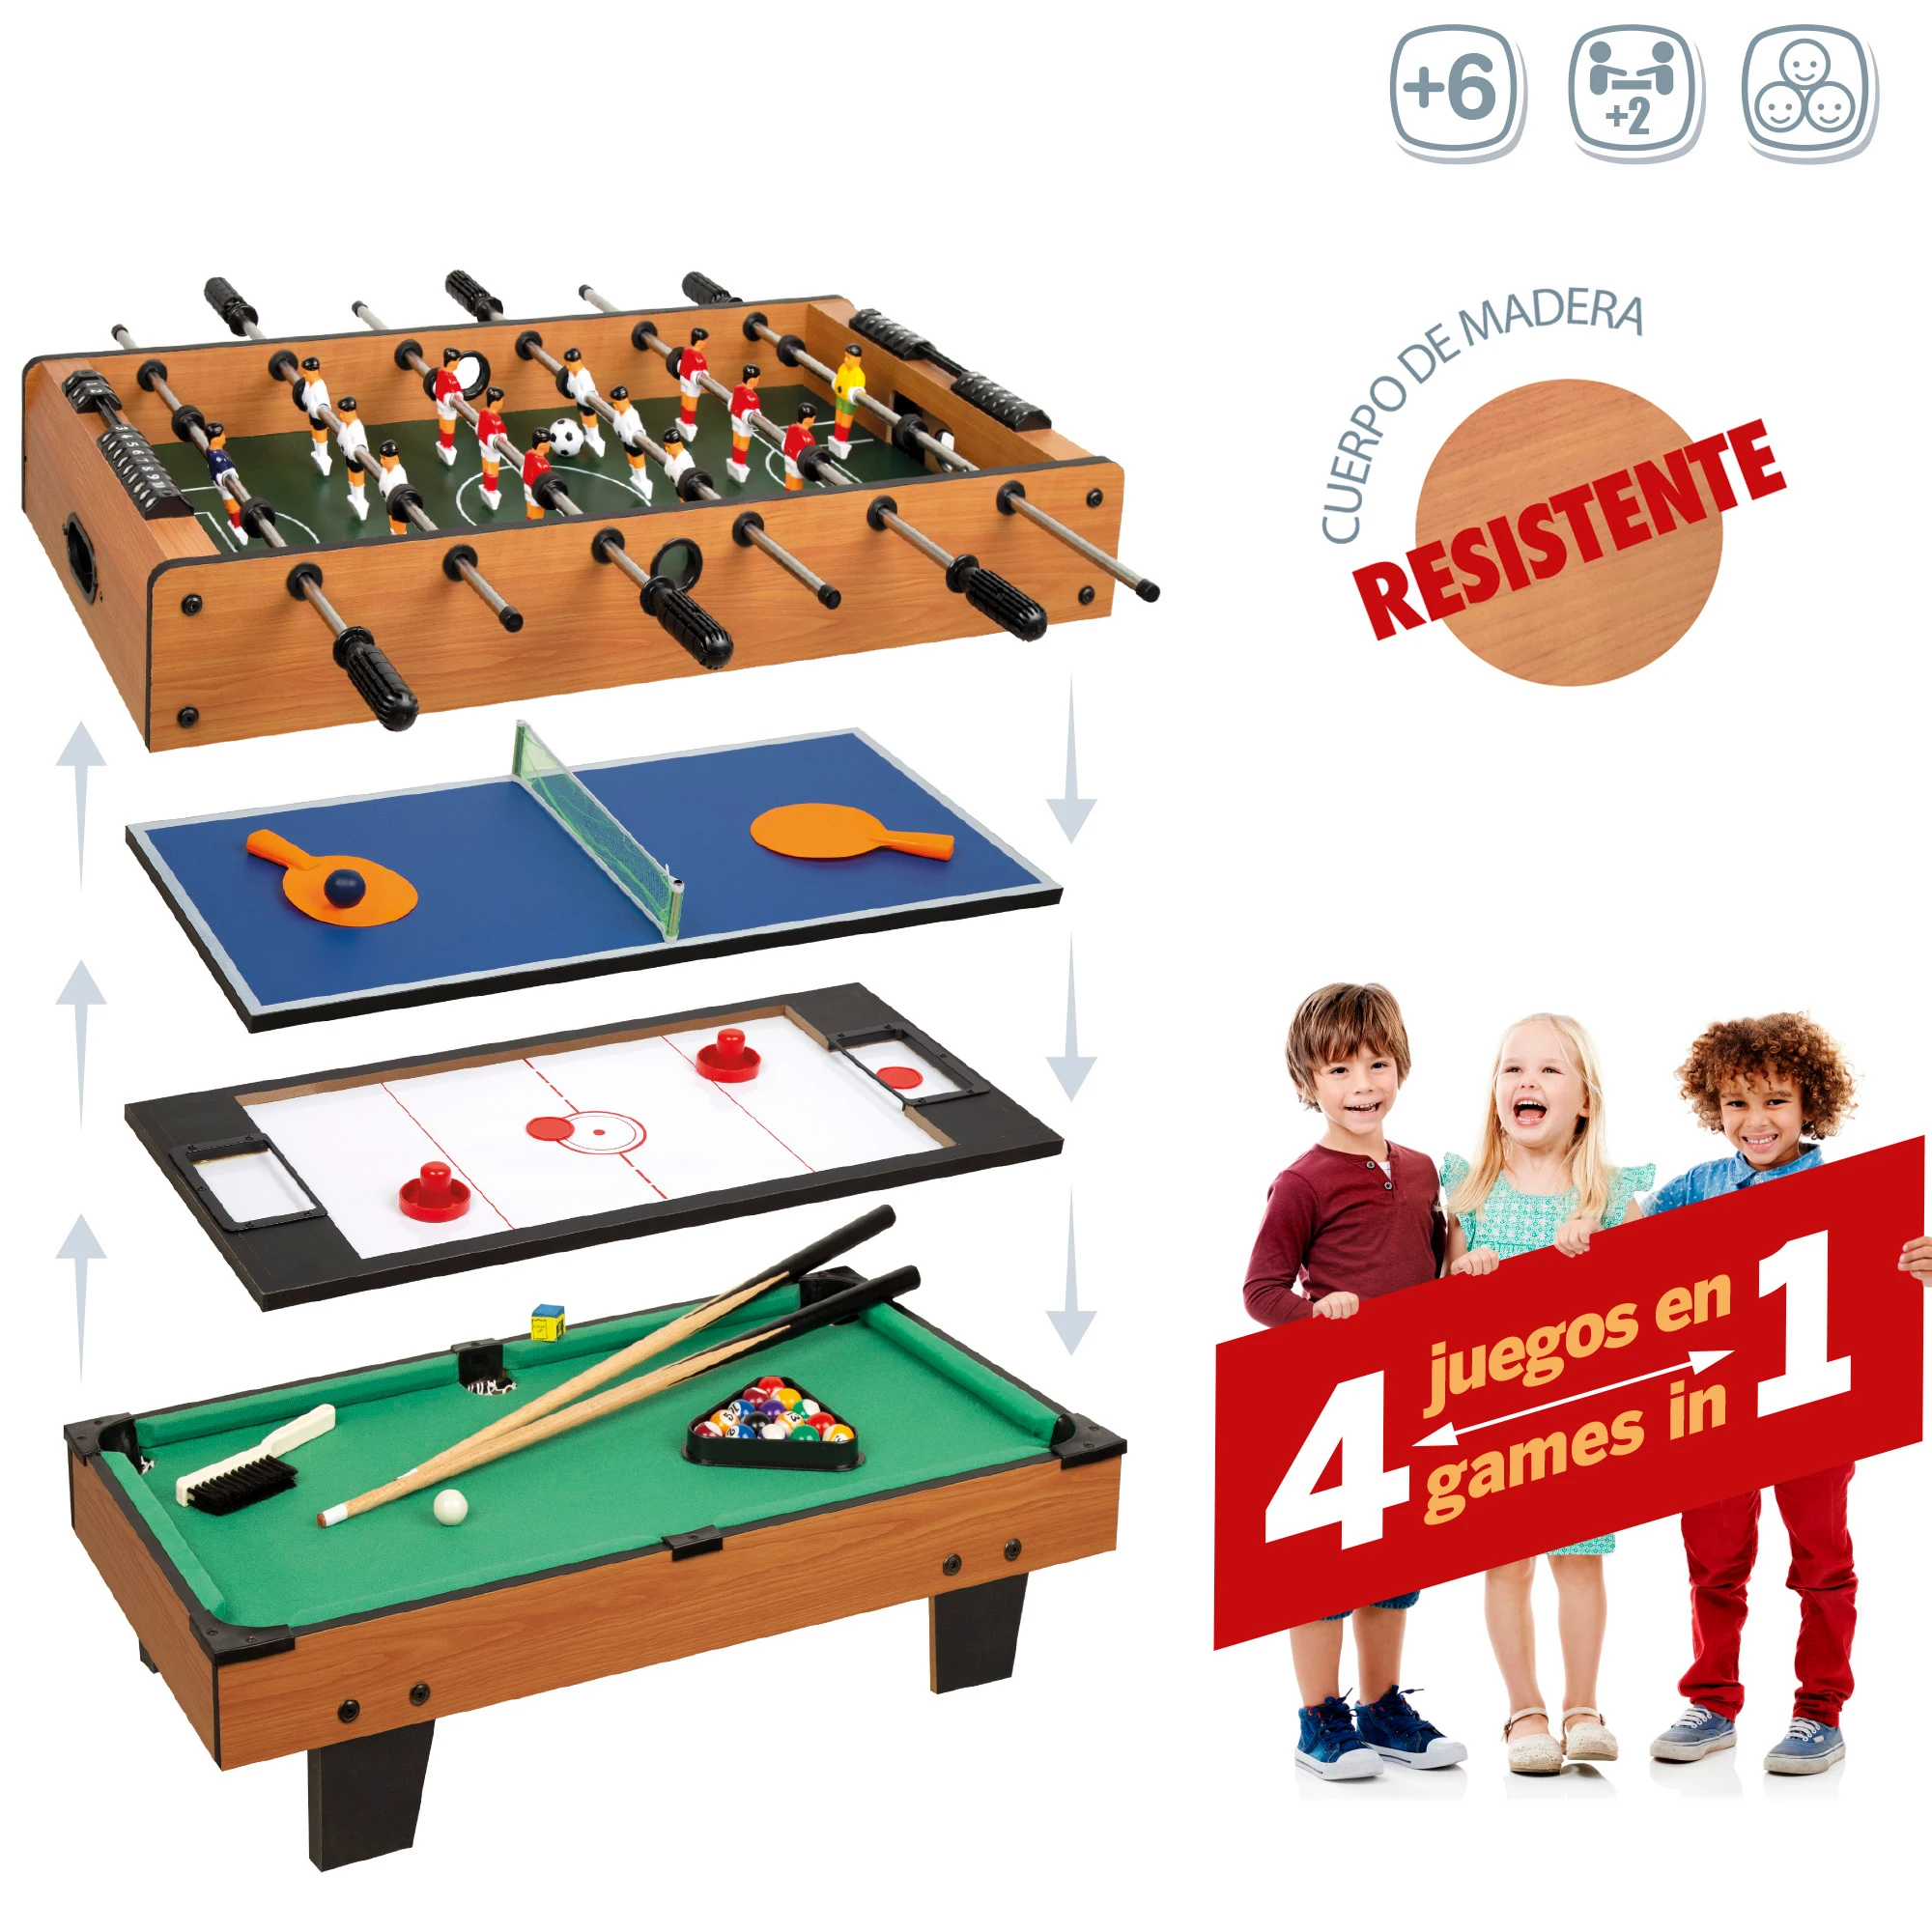  Yxxc Mini mesa de futbolín para niños, mesa de fútbol portátil  con pelota de billar de ping pong, juego de fútbol de mesa recreativo para  la familia C : Deportes y